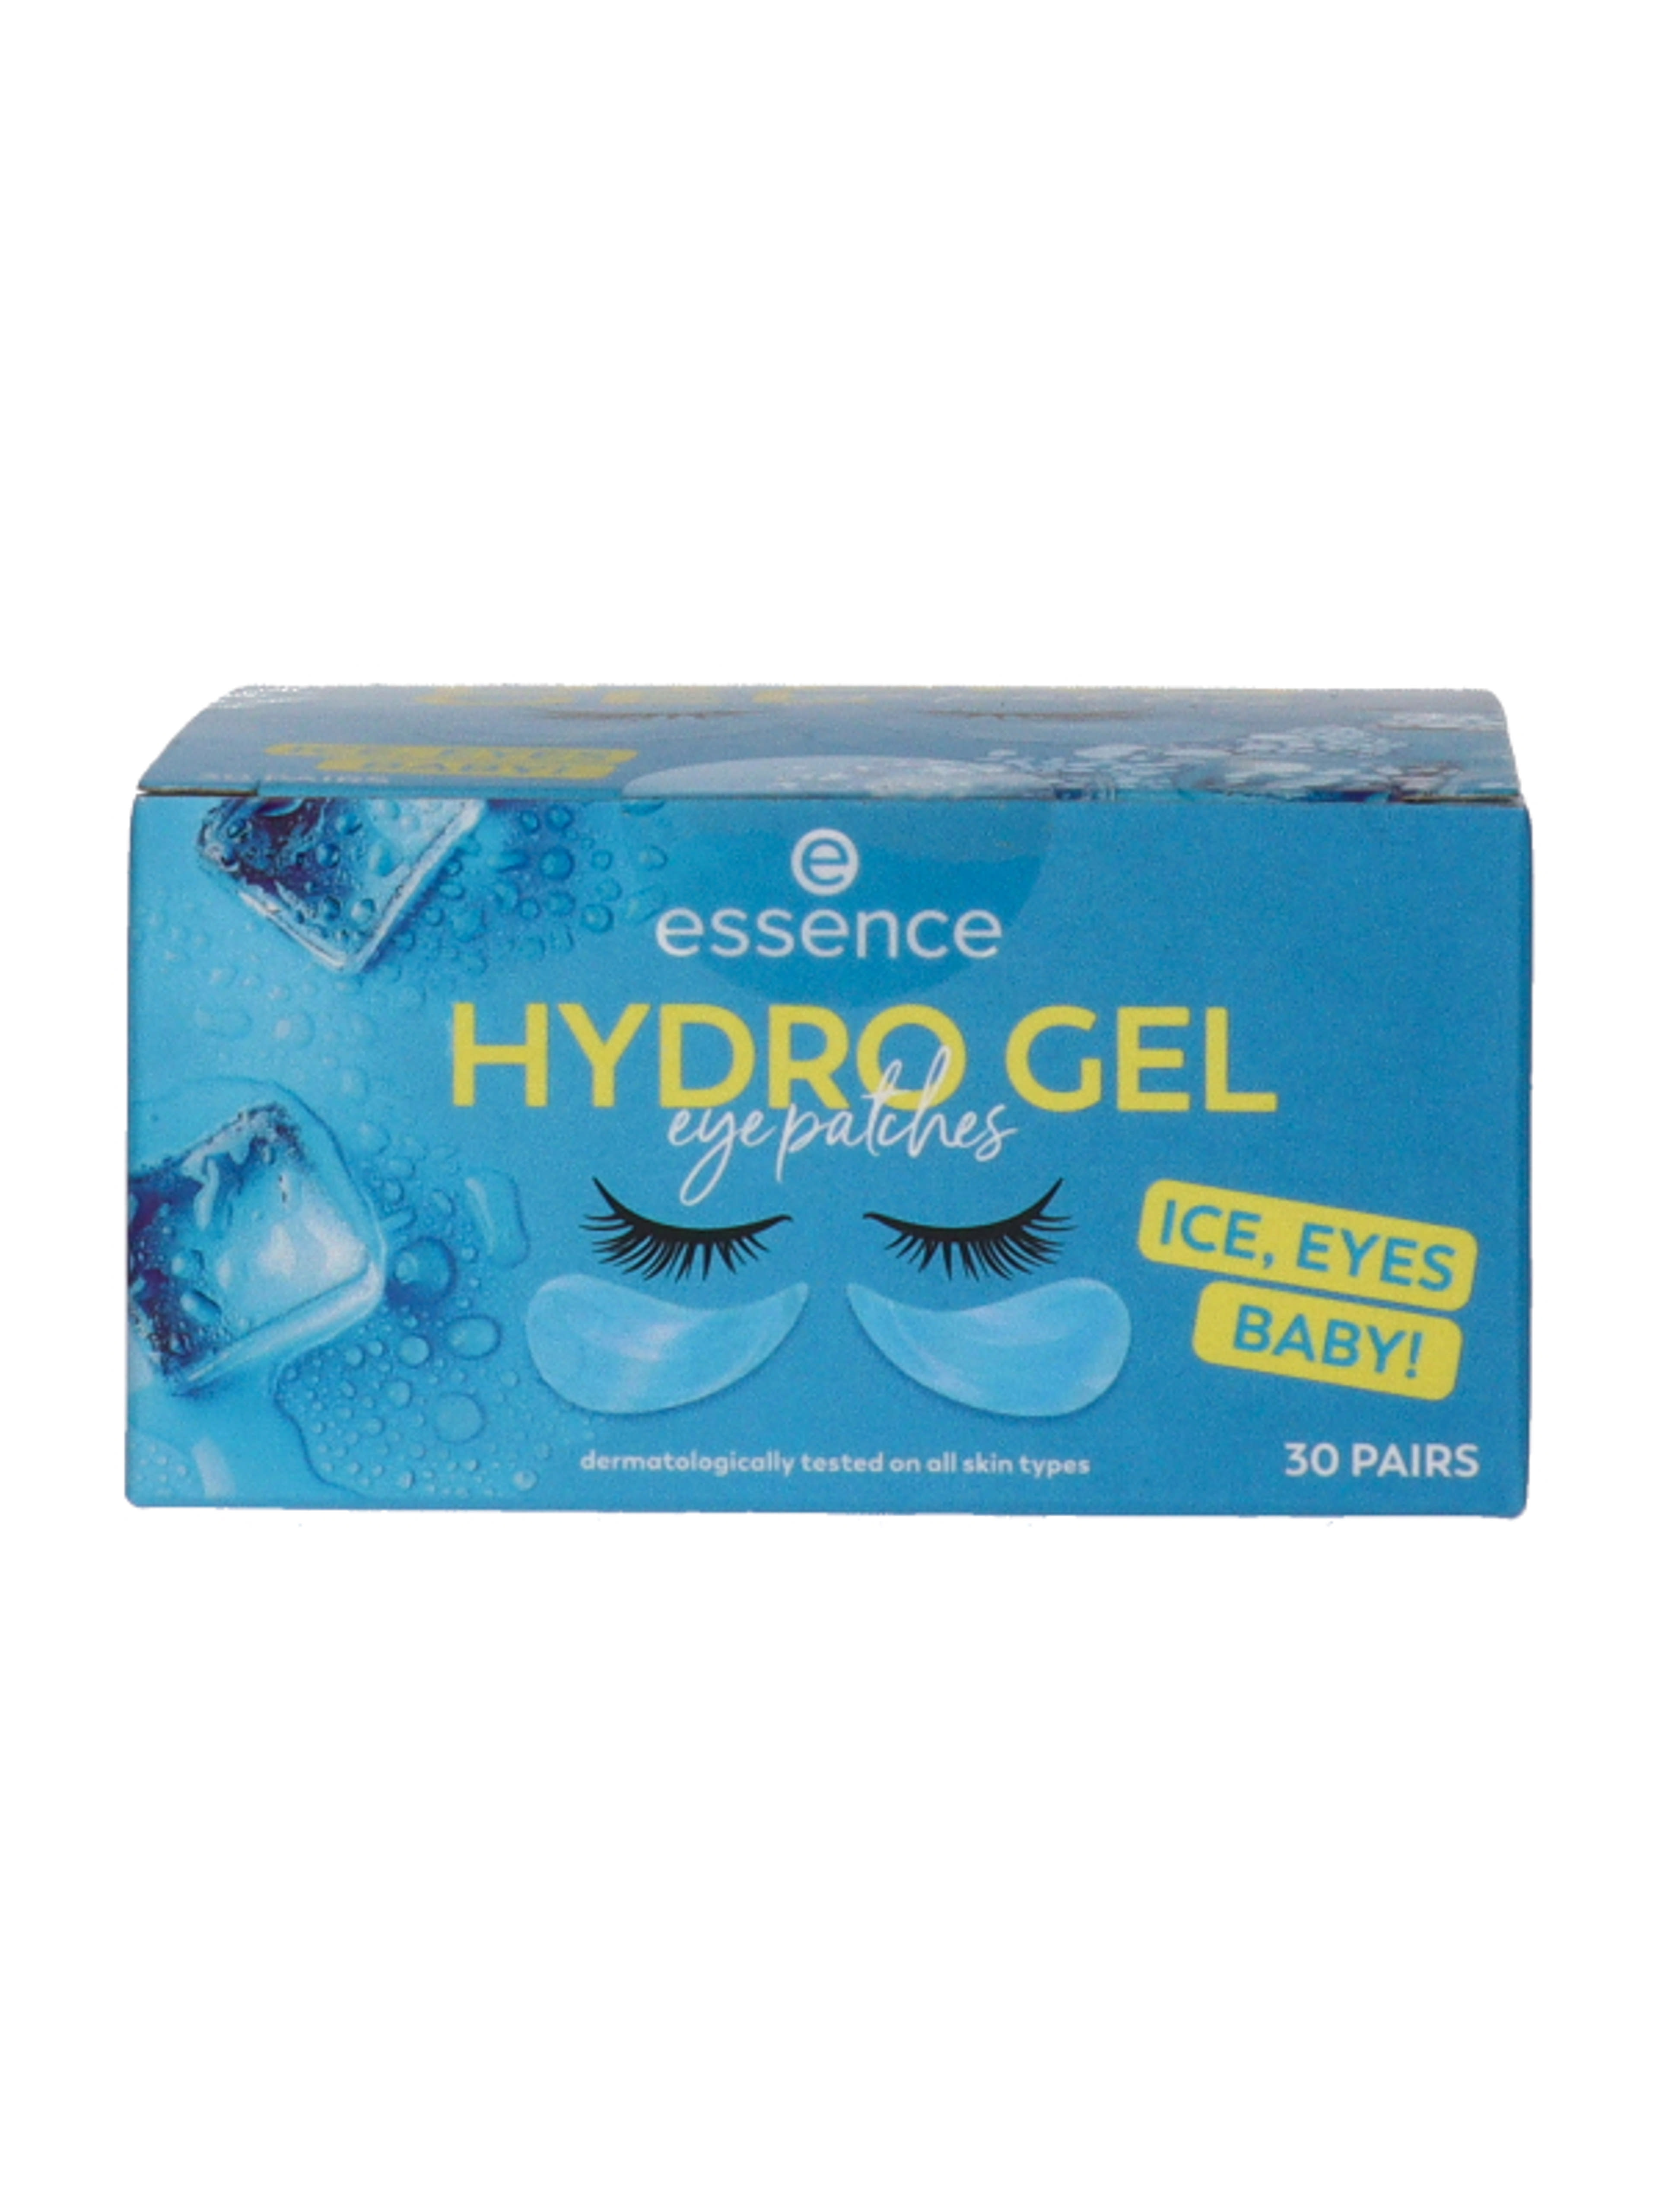 Essence Hydro Gel Ice, Eyes Baby! szemkörnyékápoló tapaszok 30 pár - 1 db